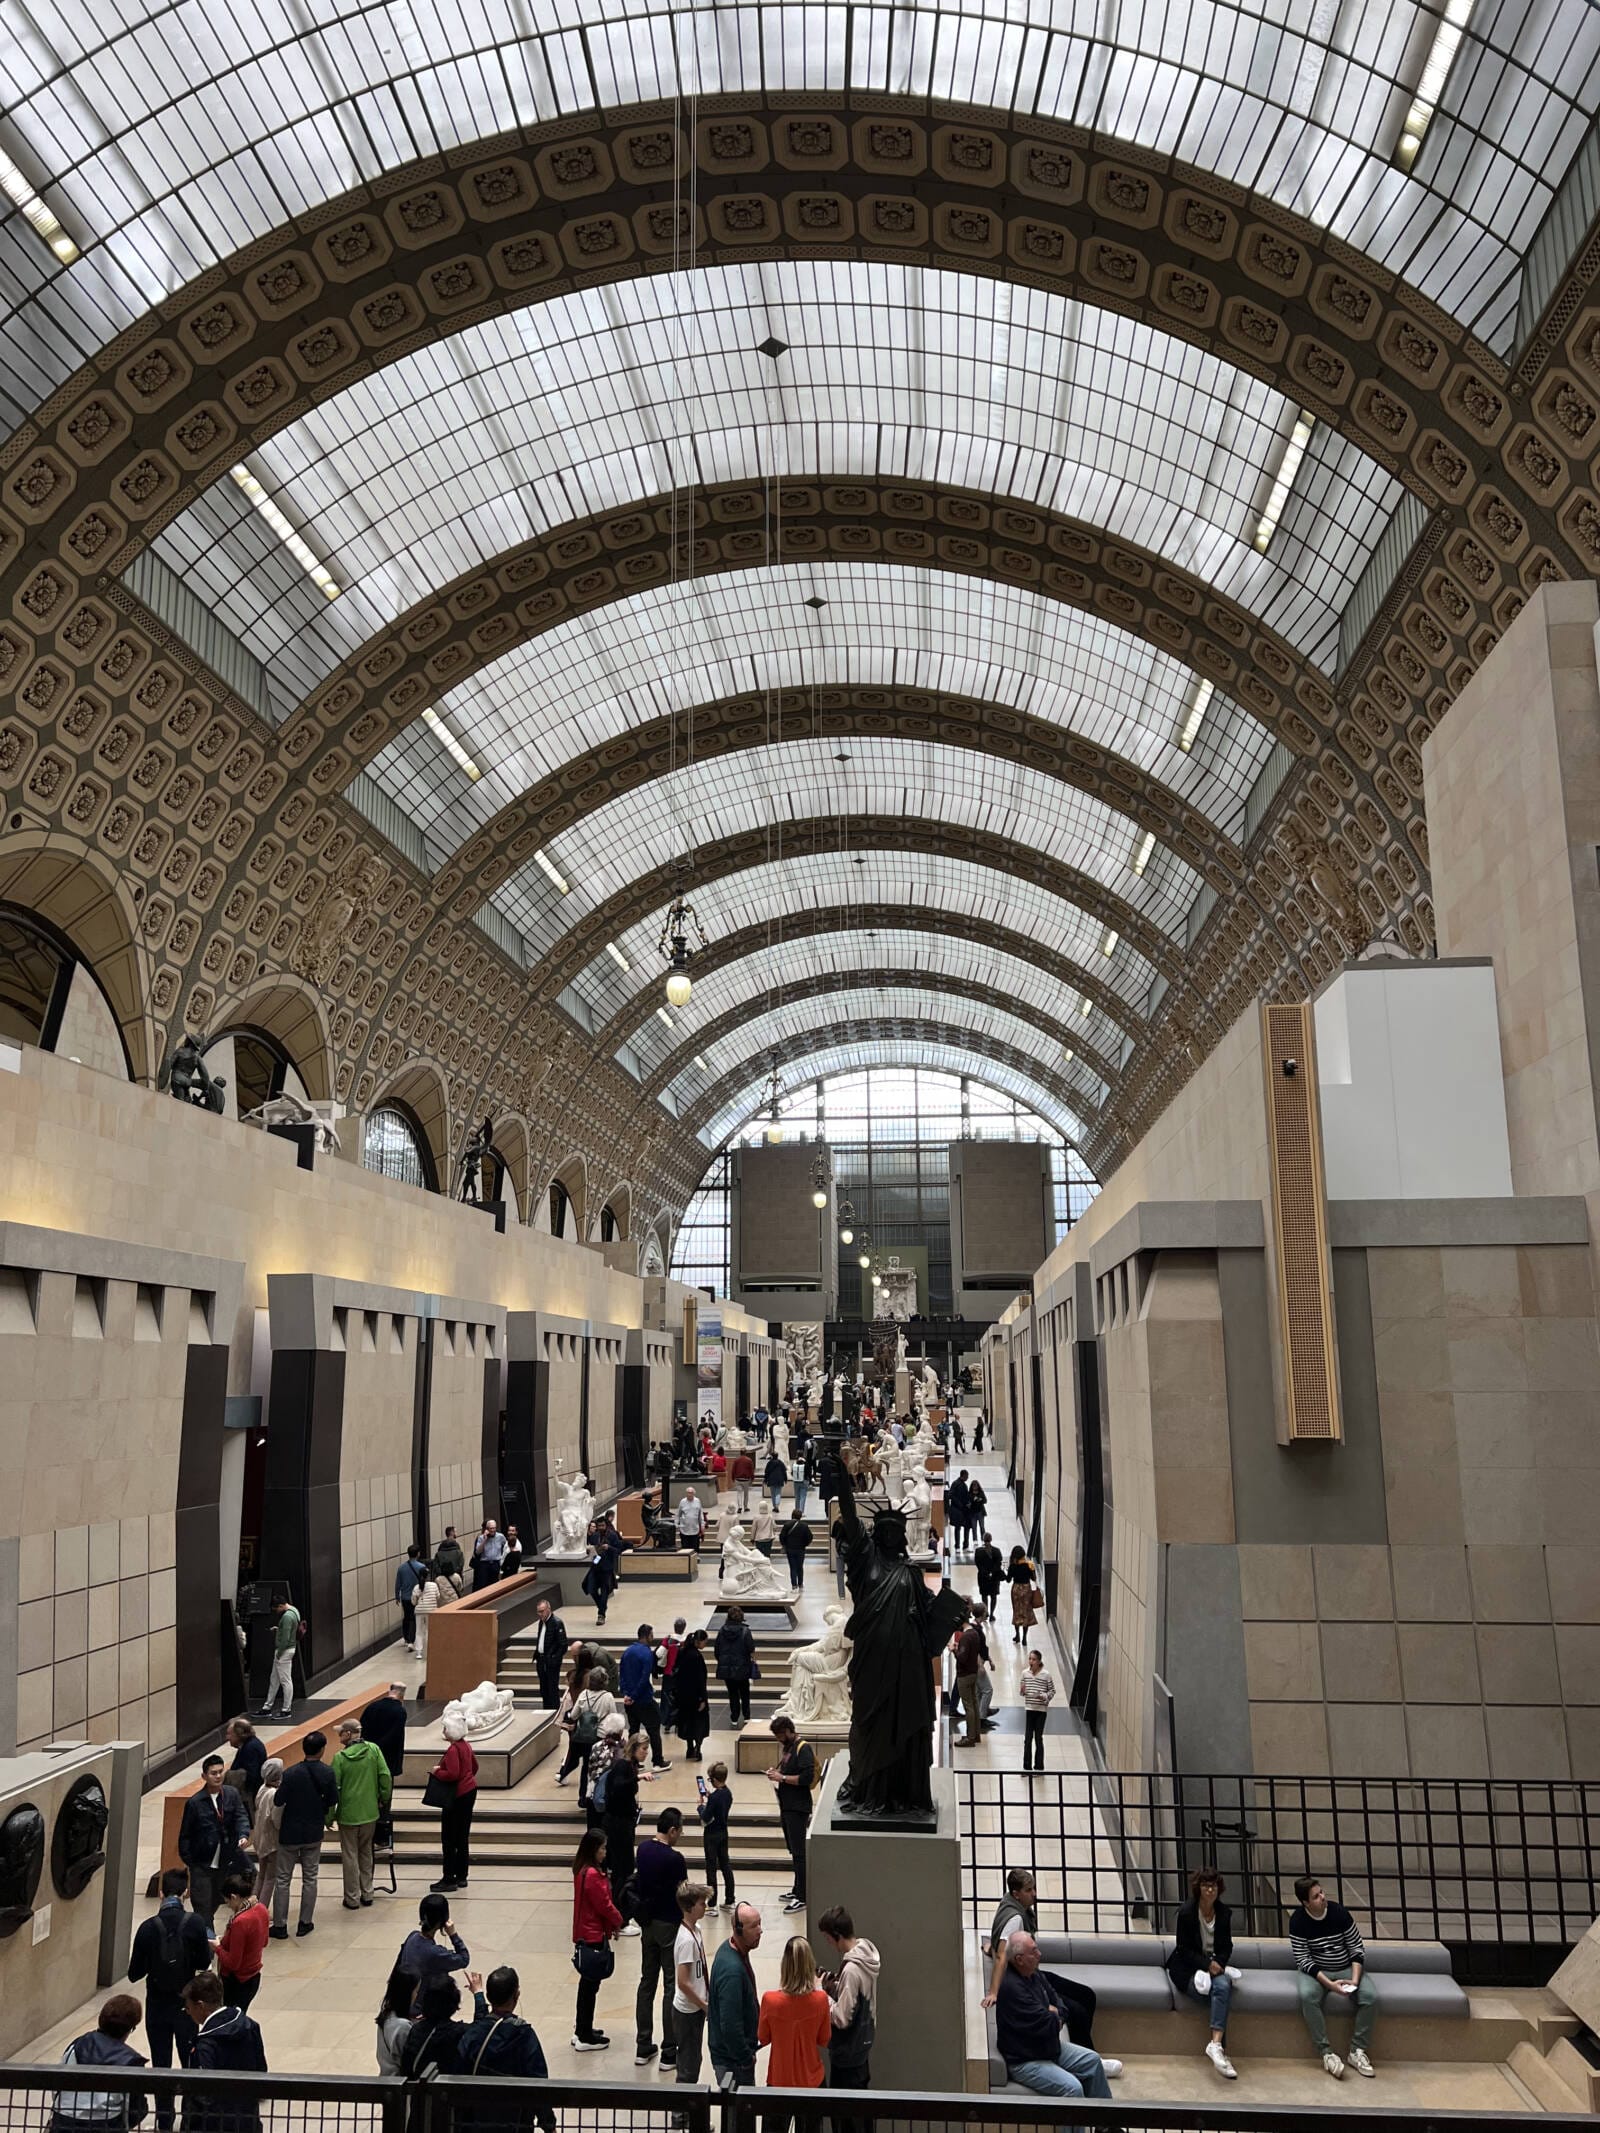 Os 7 melhores museus em Paris